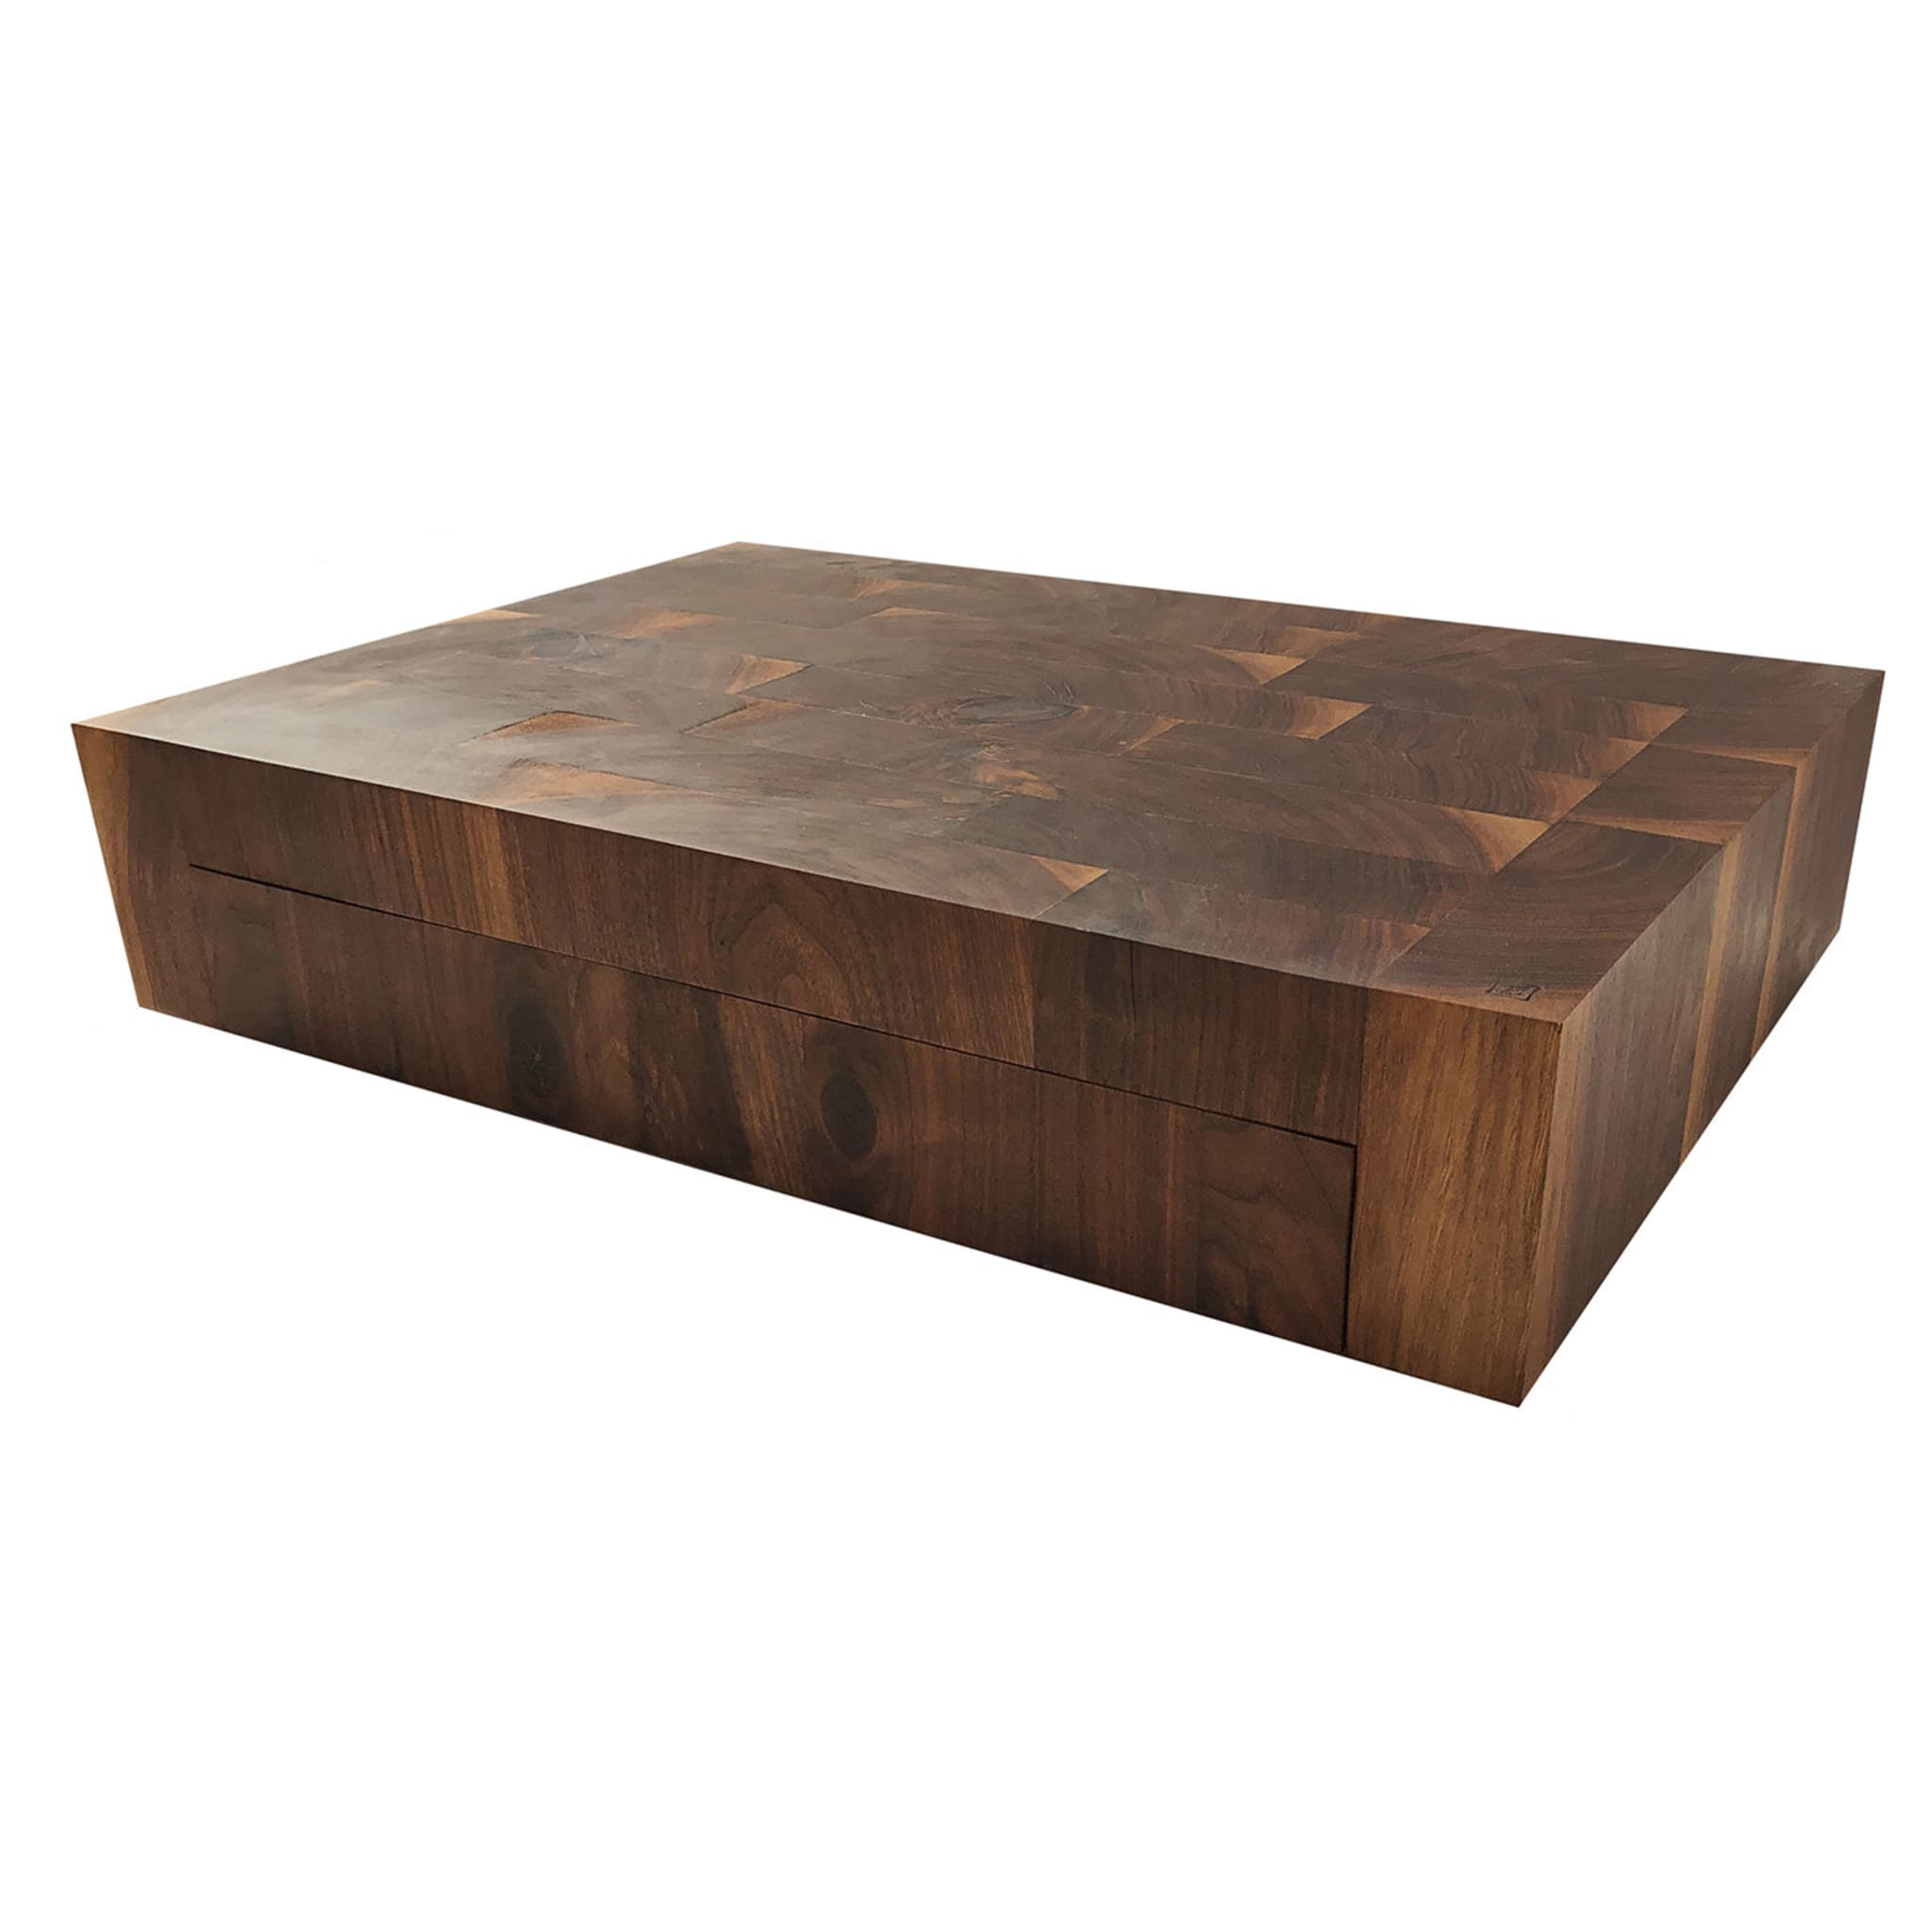 ARTISTISK Cutting board, oak, 23 ¼x9 ¾ - IKEA